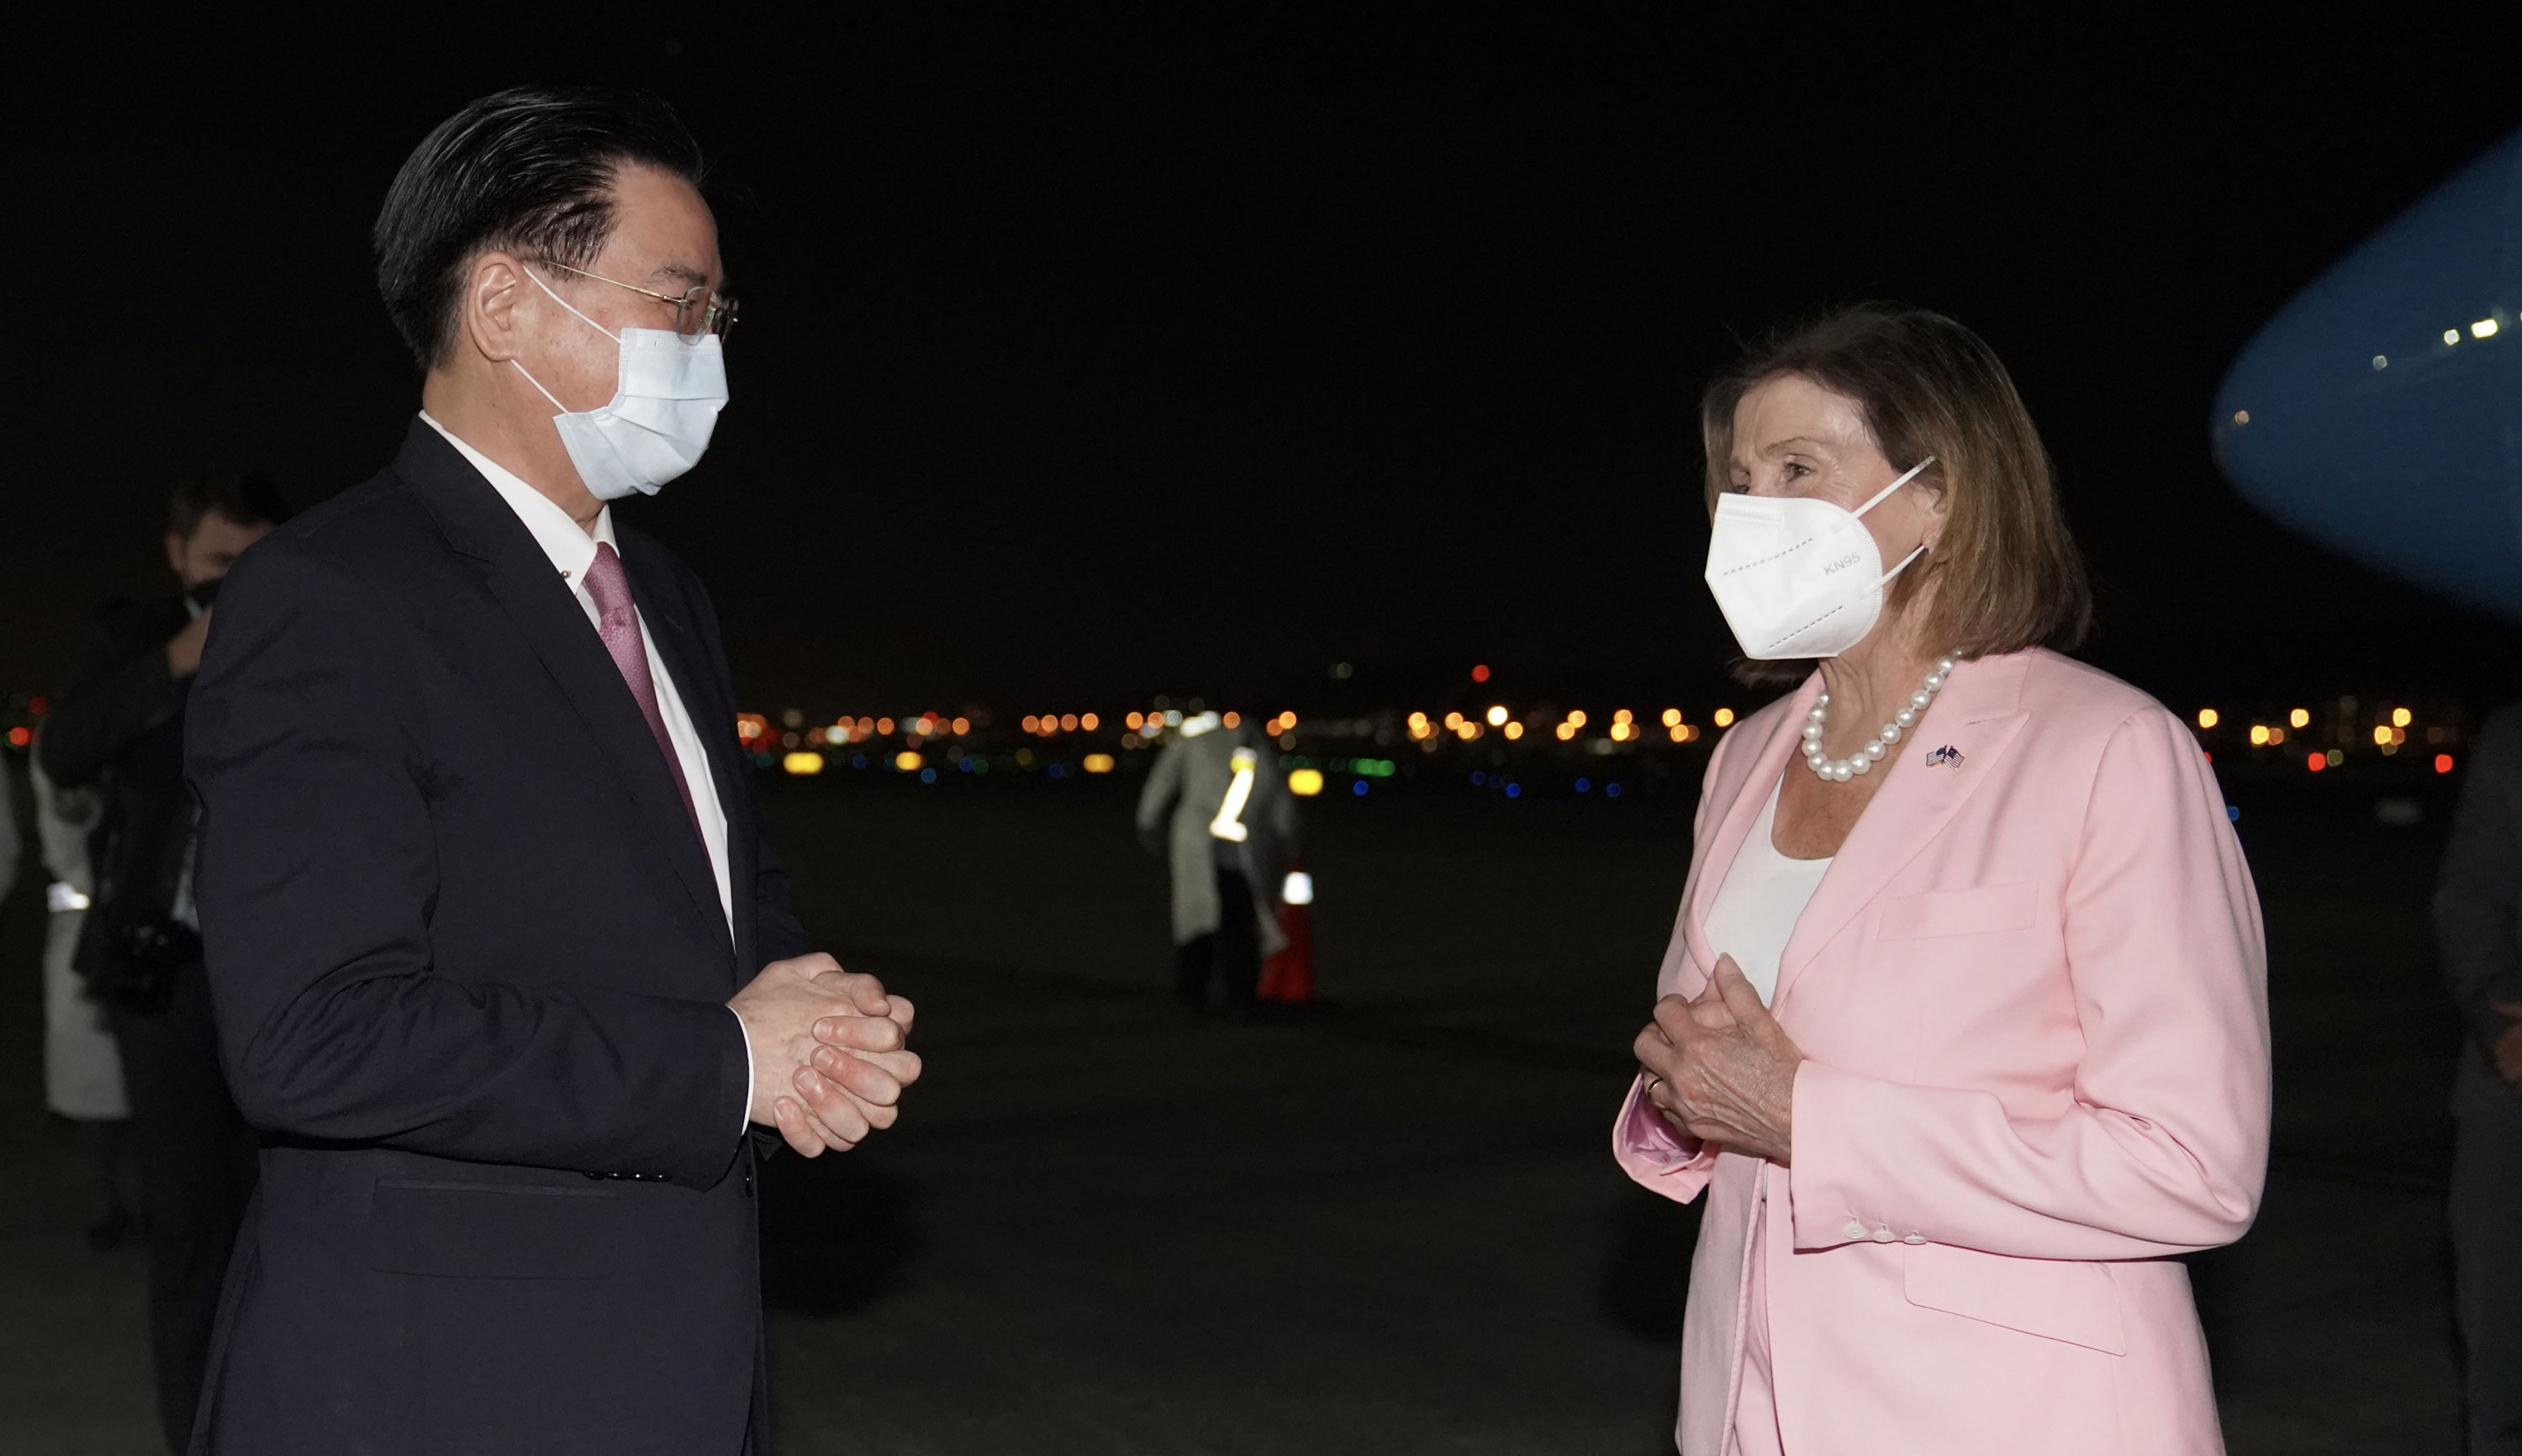 La presidenta de la Cámara de Representantes de los Estados Unidos, Nancy Pelosi, es recibida por el ministro de Relaciones Exteriores de Taiwán, Joseph Wu, después de aterrizar en el aeropuerto de Taipei Songshan el 2 de agosto.